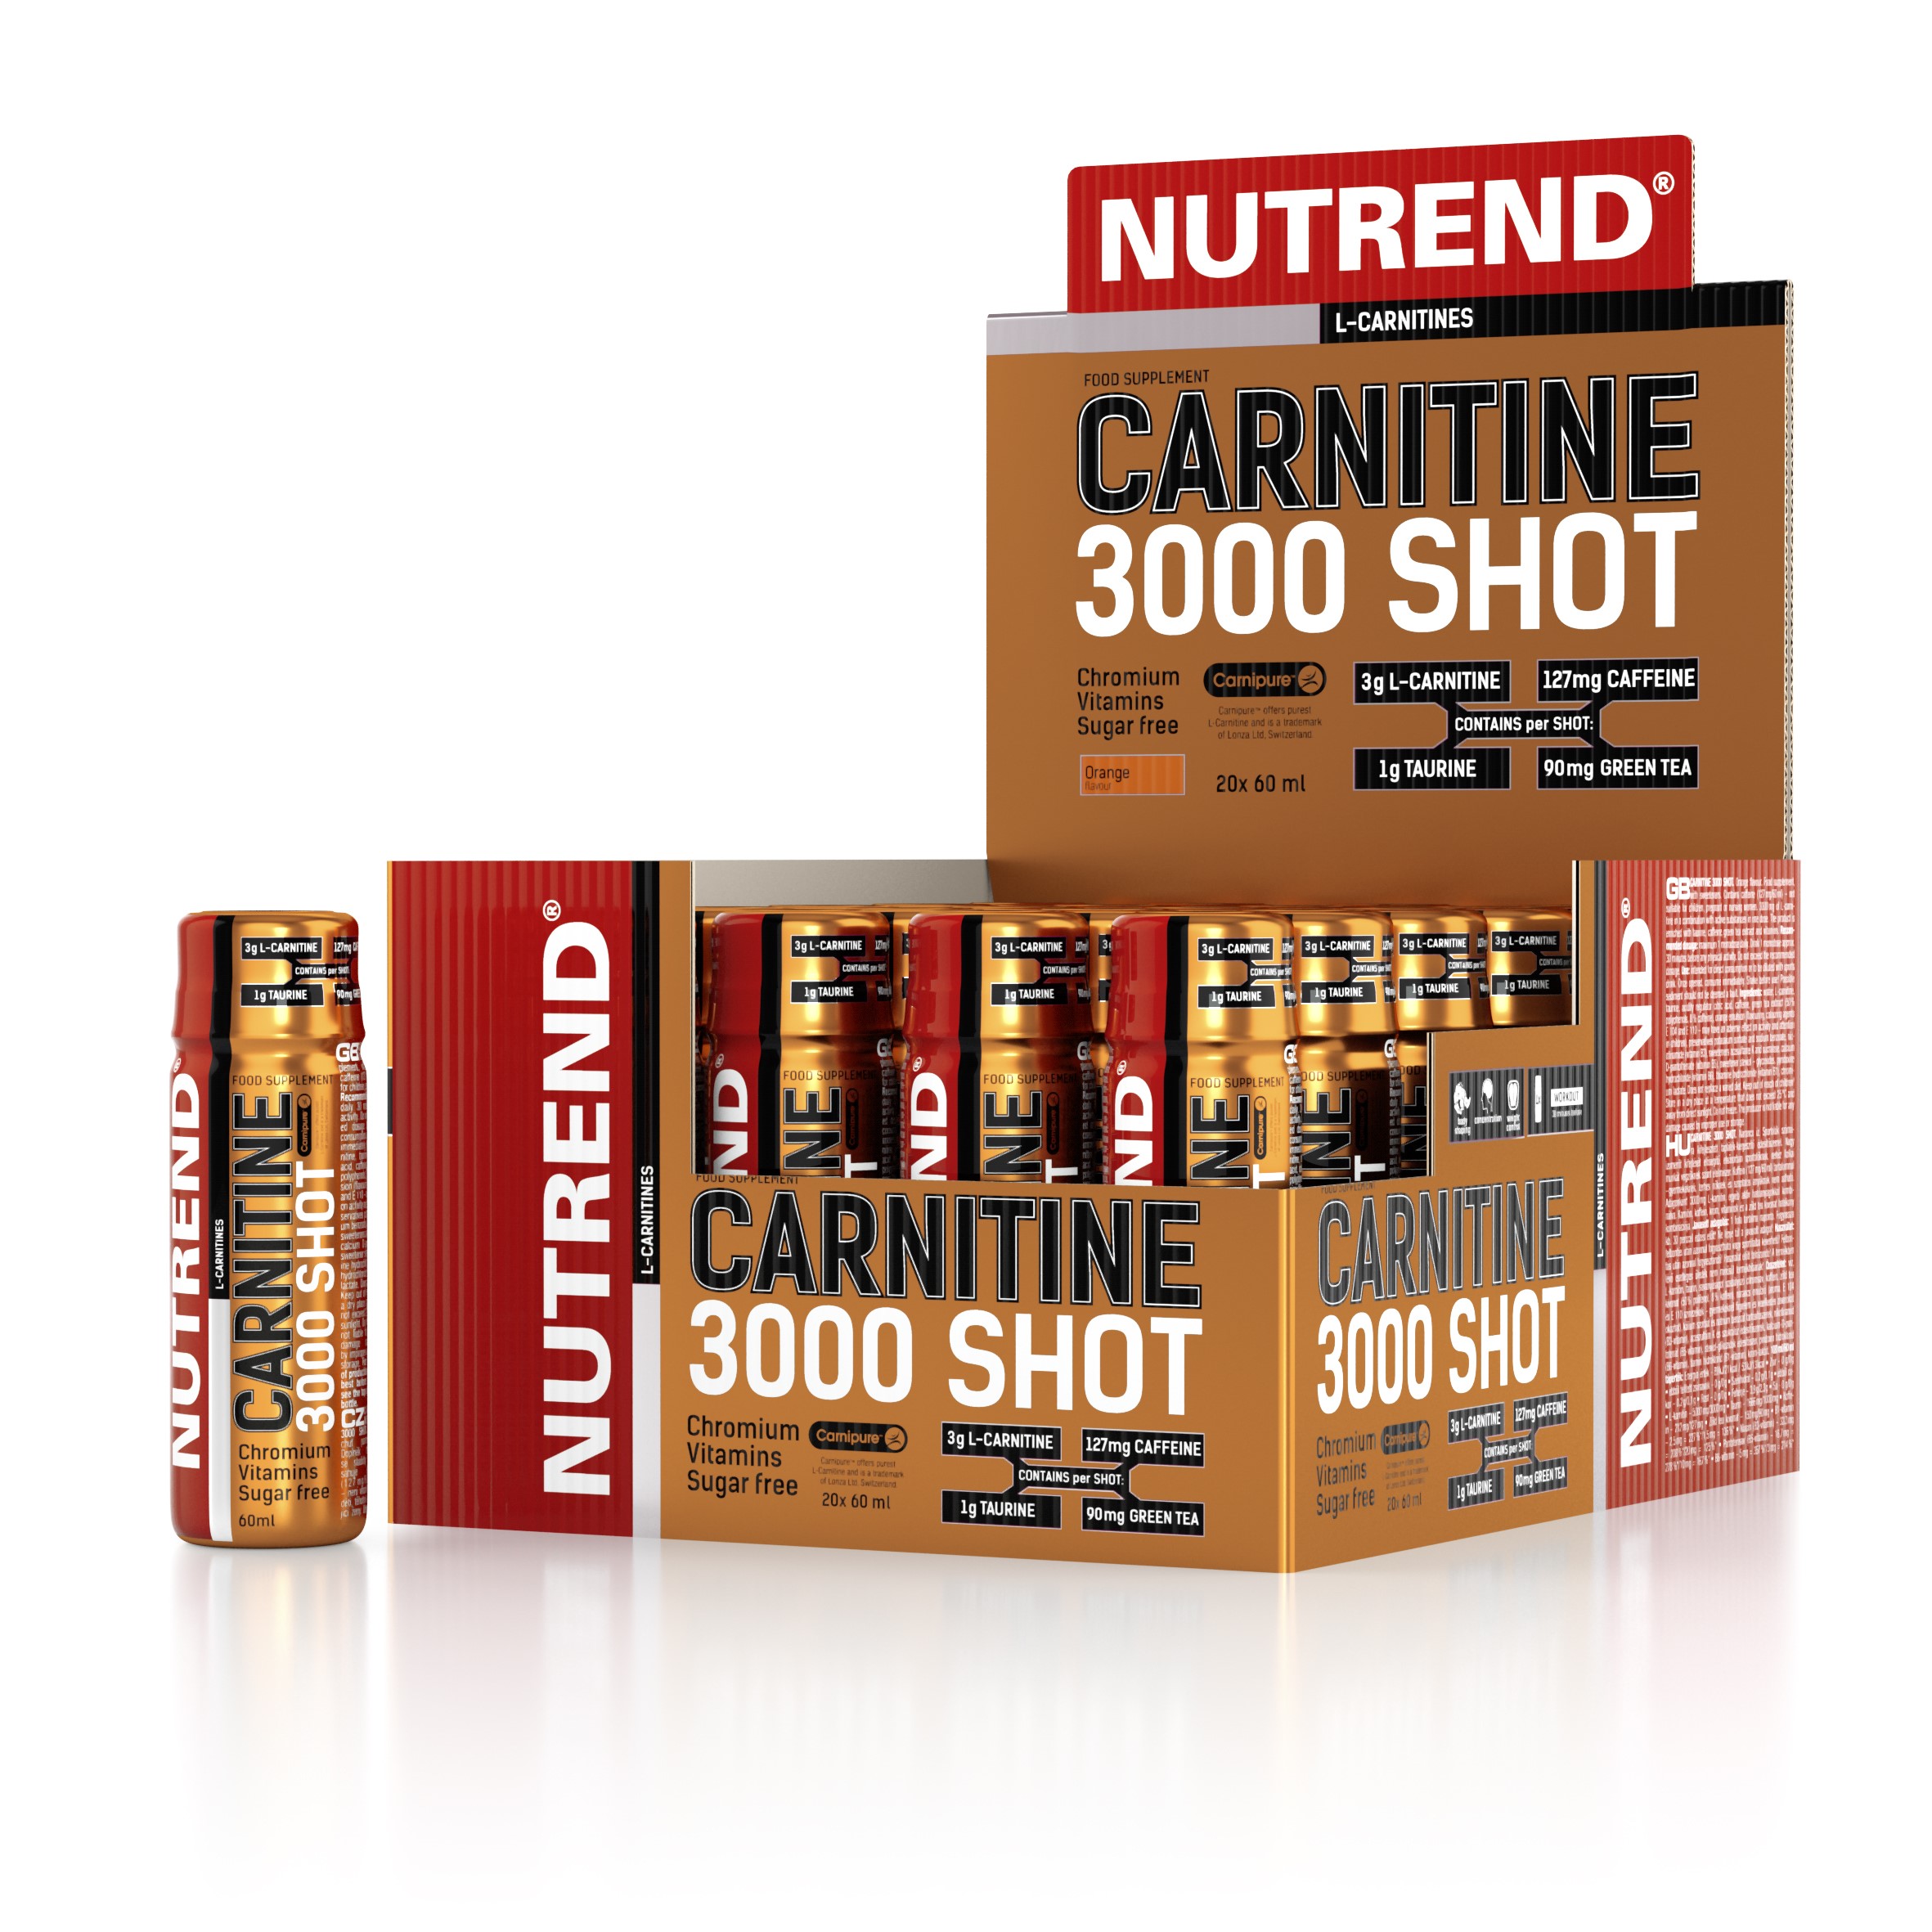 L-Carnitina - CARNITINE 3000 SHOT 60 ml, advancednutrition.ro